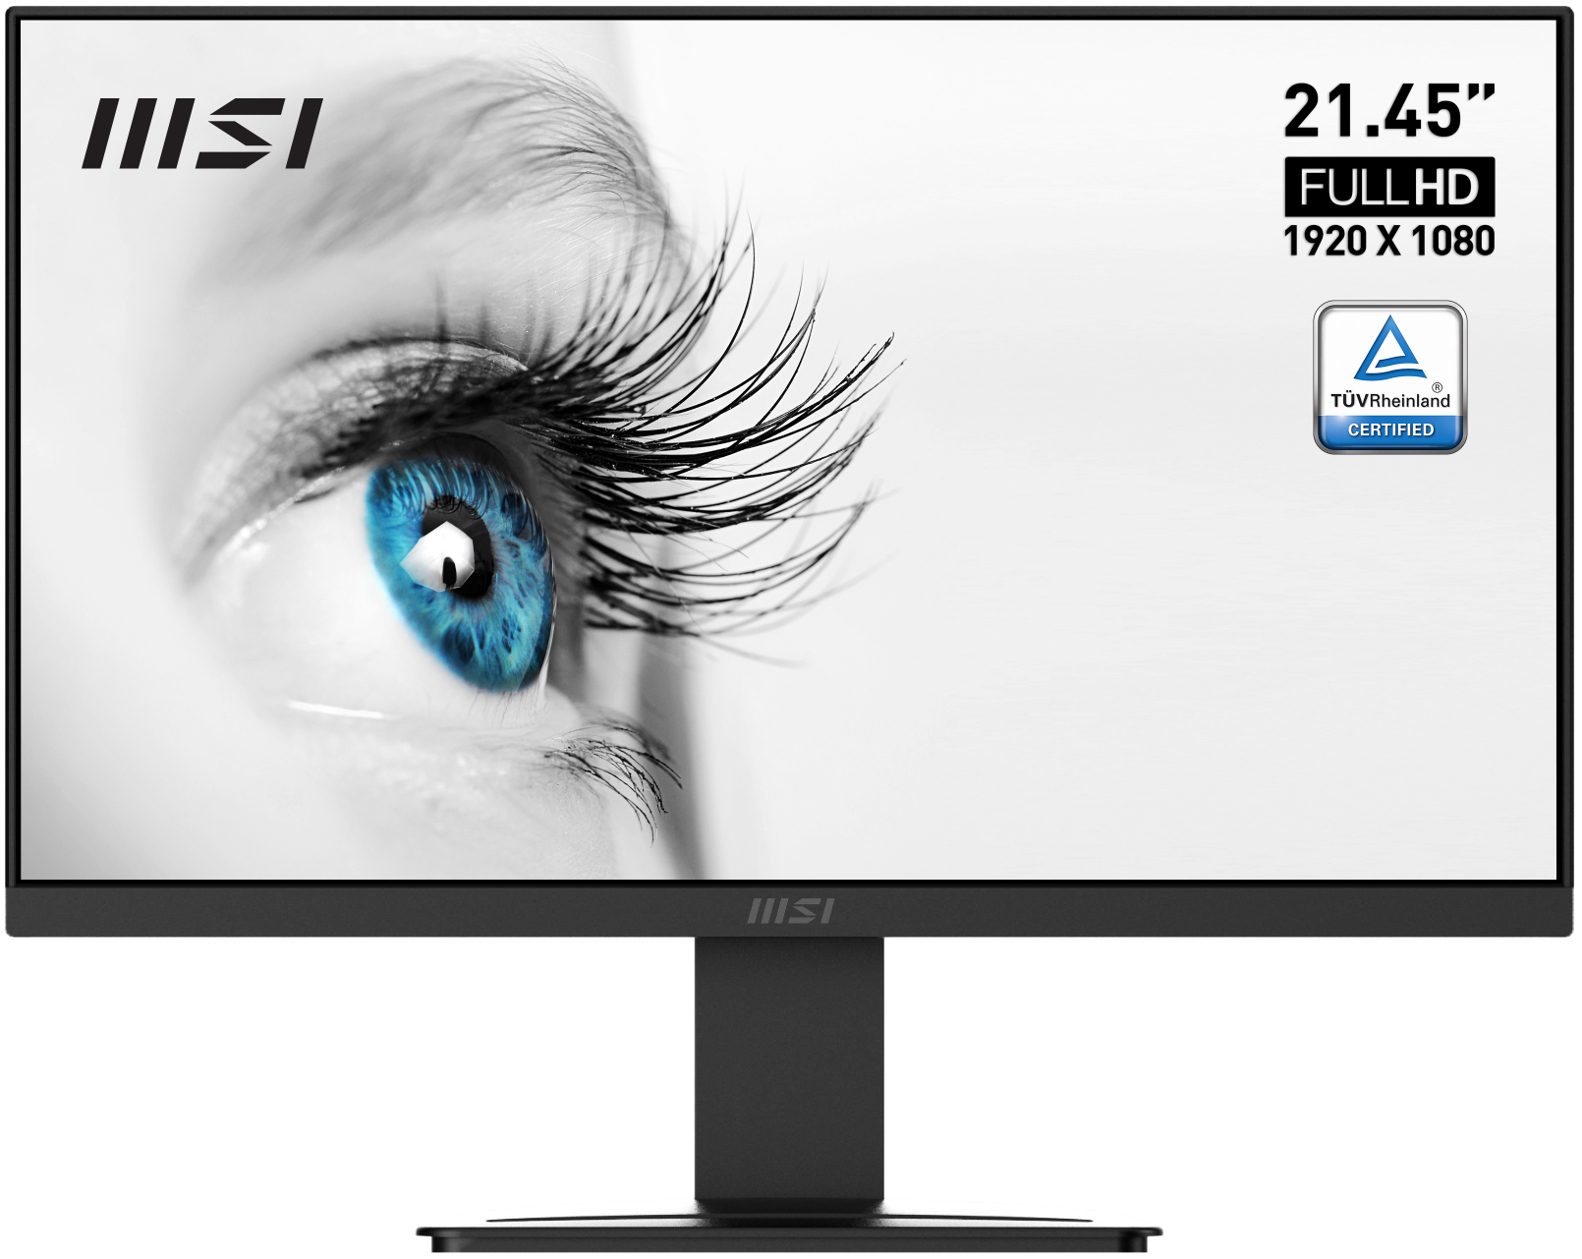 MSI Pro MP223 computer monitor